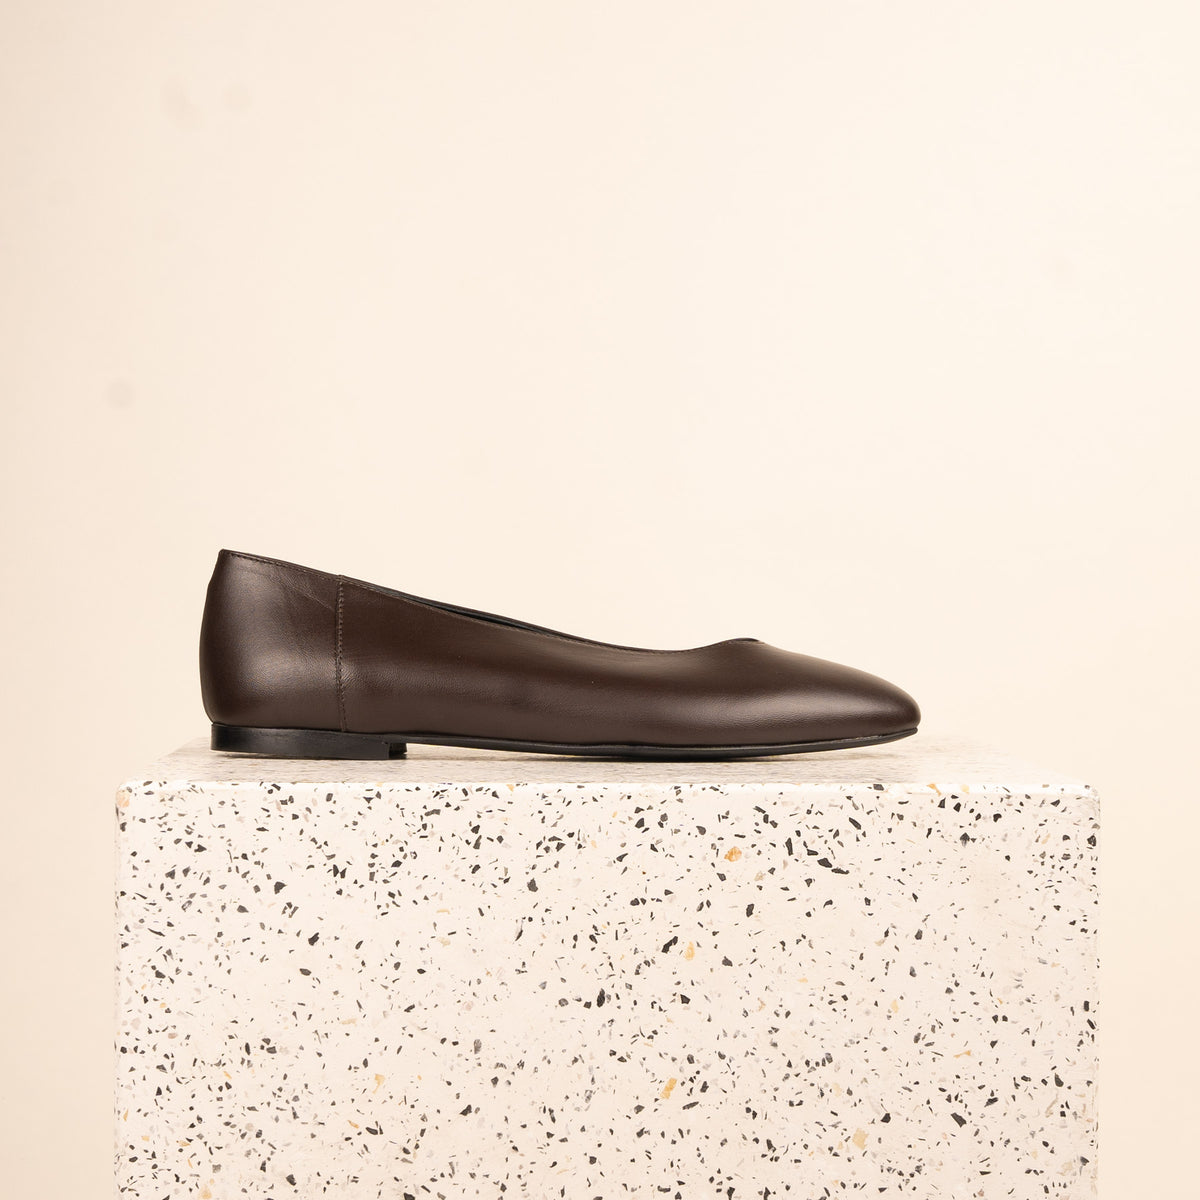 Scala - Chocolate Leather SAMPLE SALE - FINAL SALE